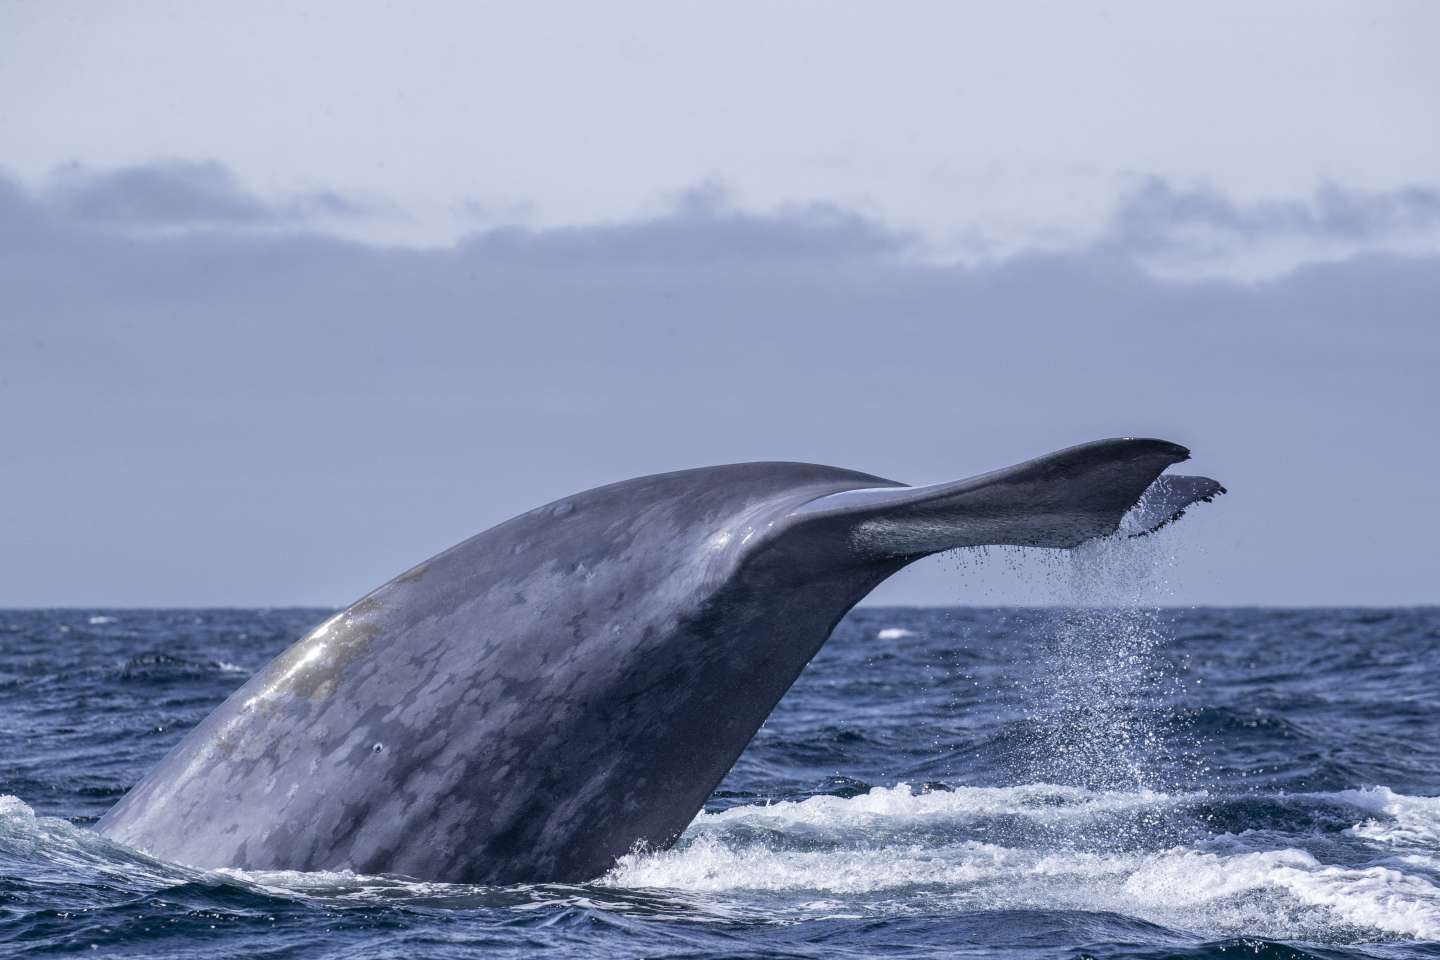 Les baleines n’étaient pas aussi nombreuses qu’on le pensait avant la pêche industrielle